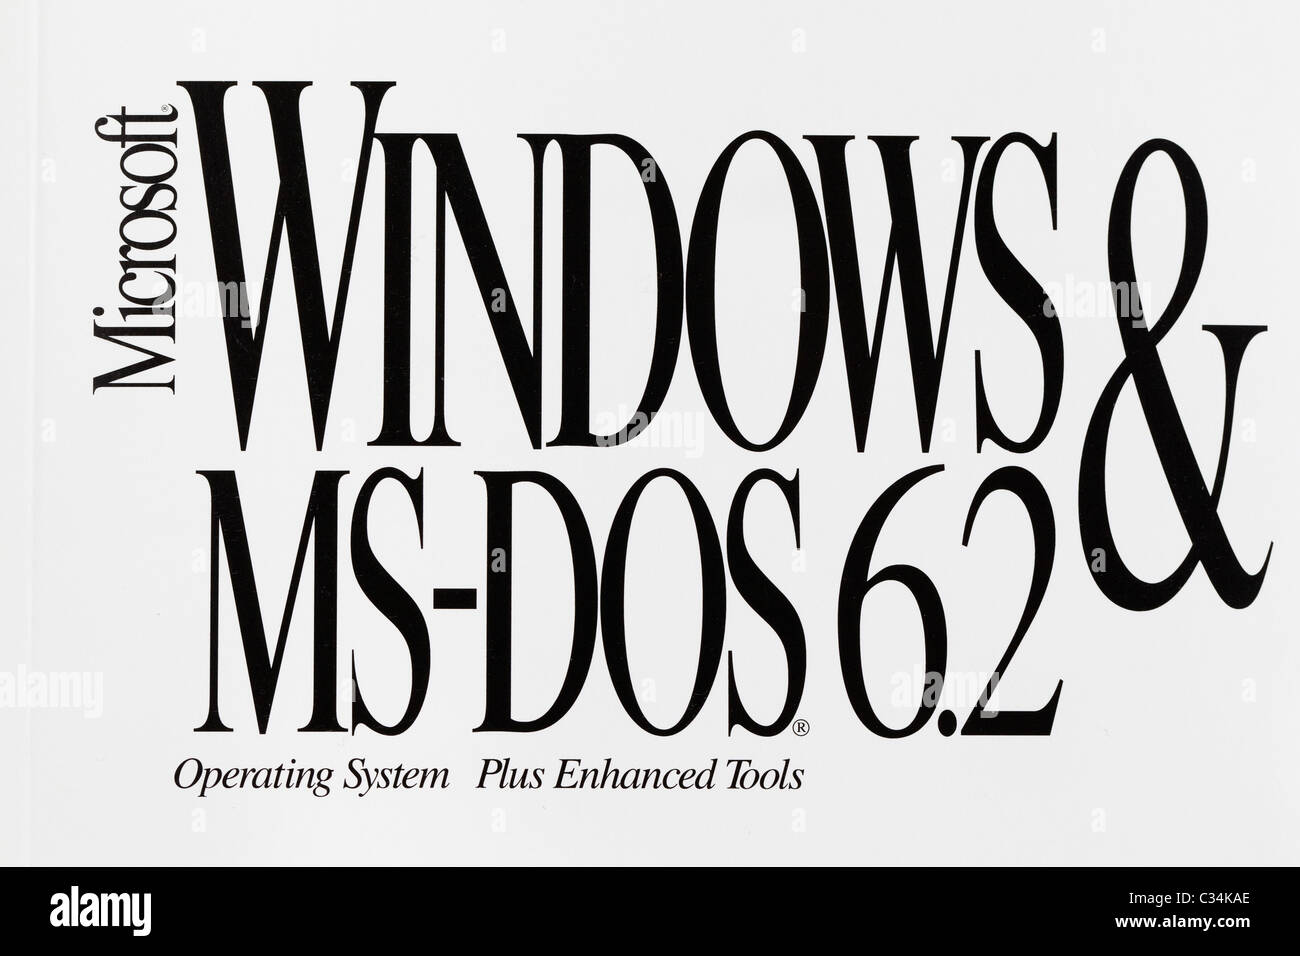 Close up detail d'un vieux Microsoft Windows et MS-DOS version 6.2 manuel, vers le début des années 1990. Banque D'Images